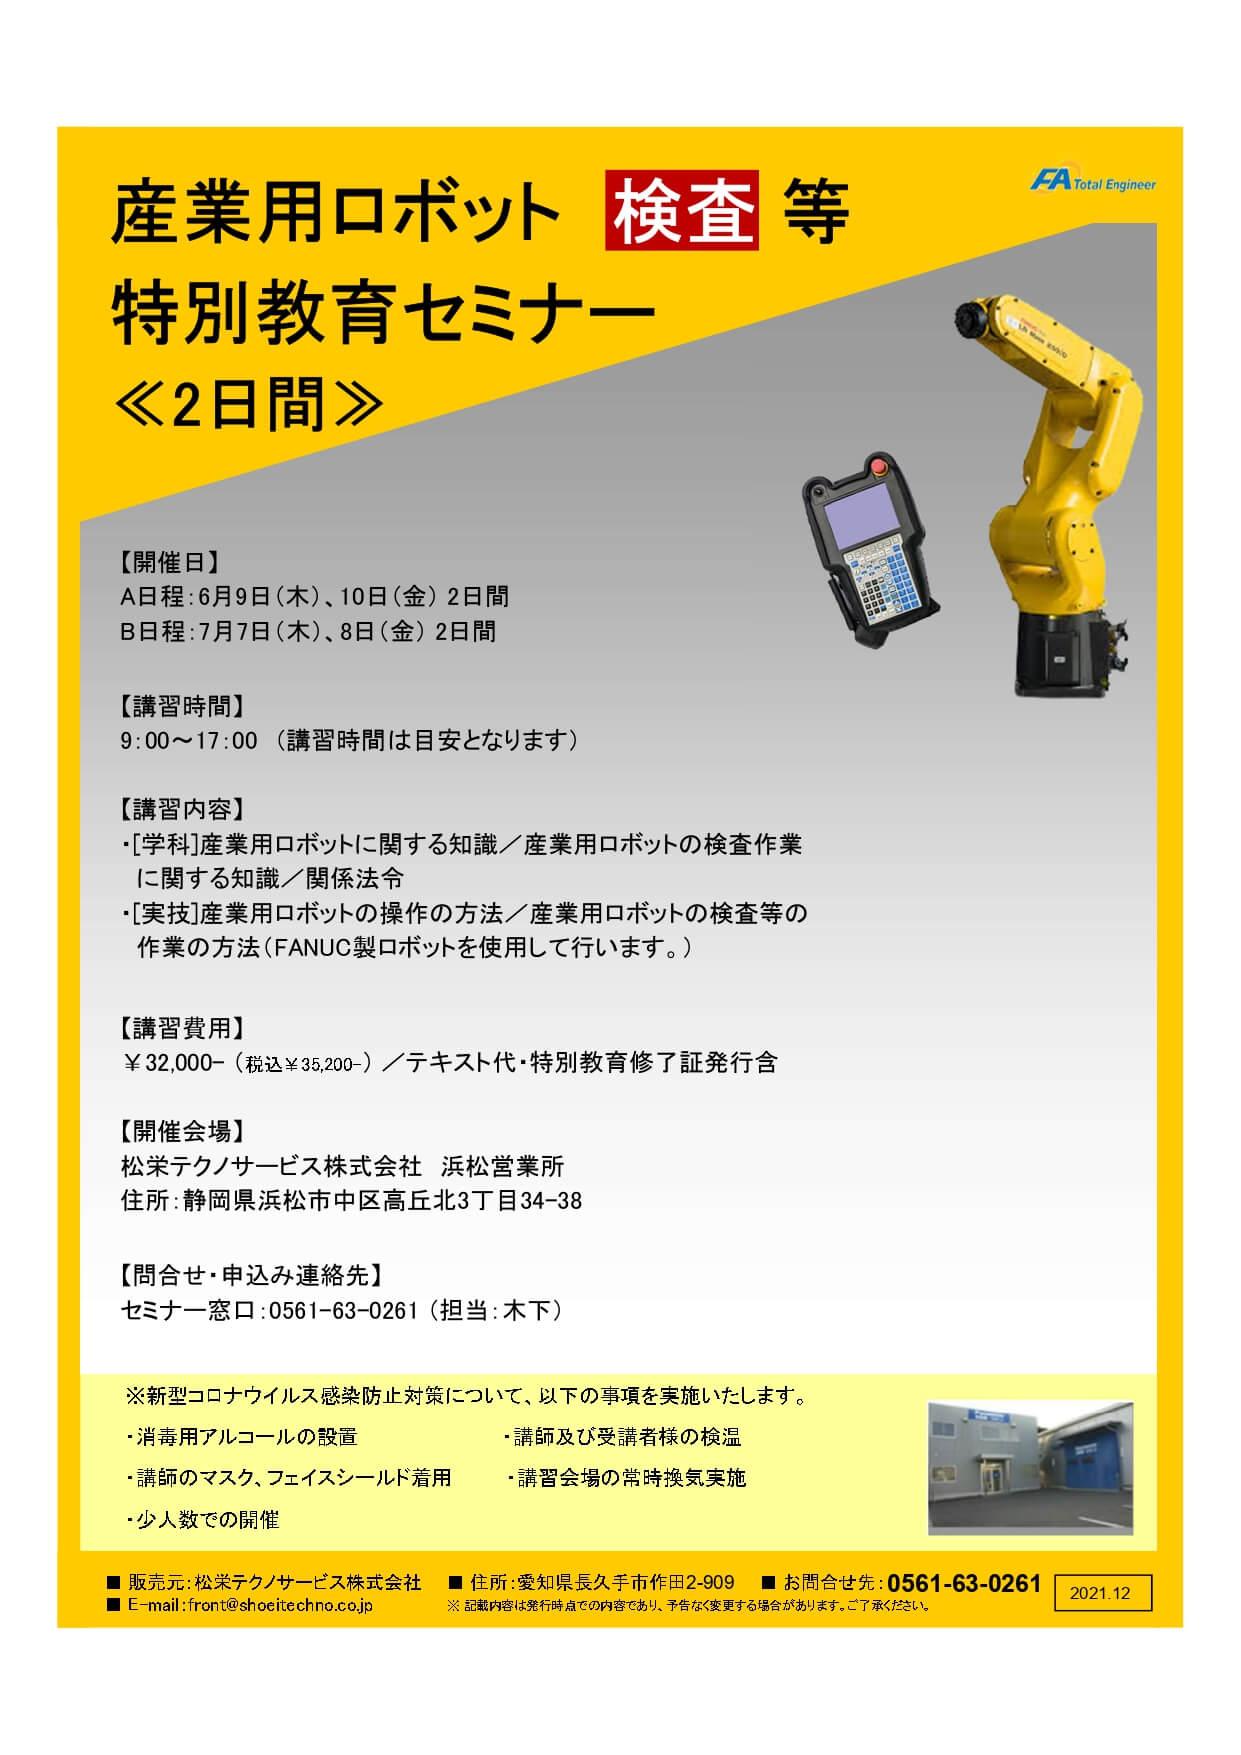 【受付中】産業用ロボット特別教育（検査等）静岡会場開催のお知らせ【2022年6月～2022年7月】